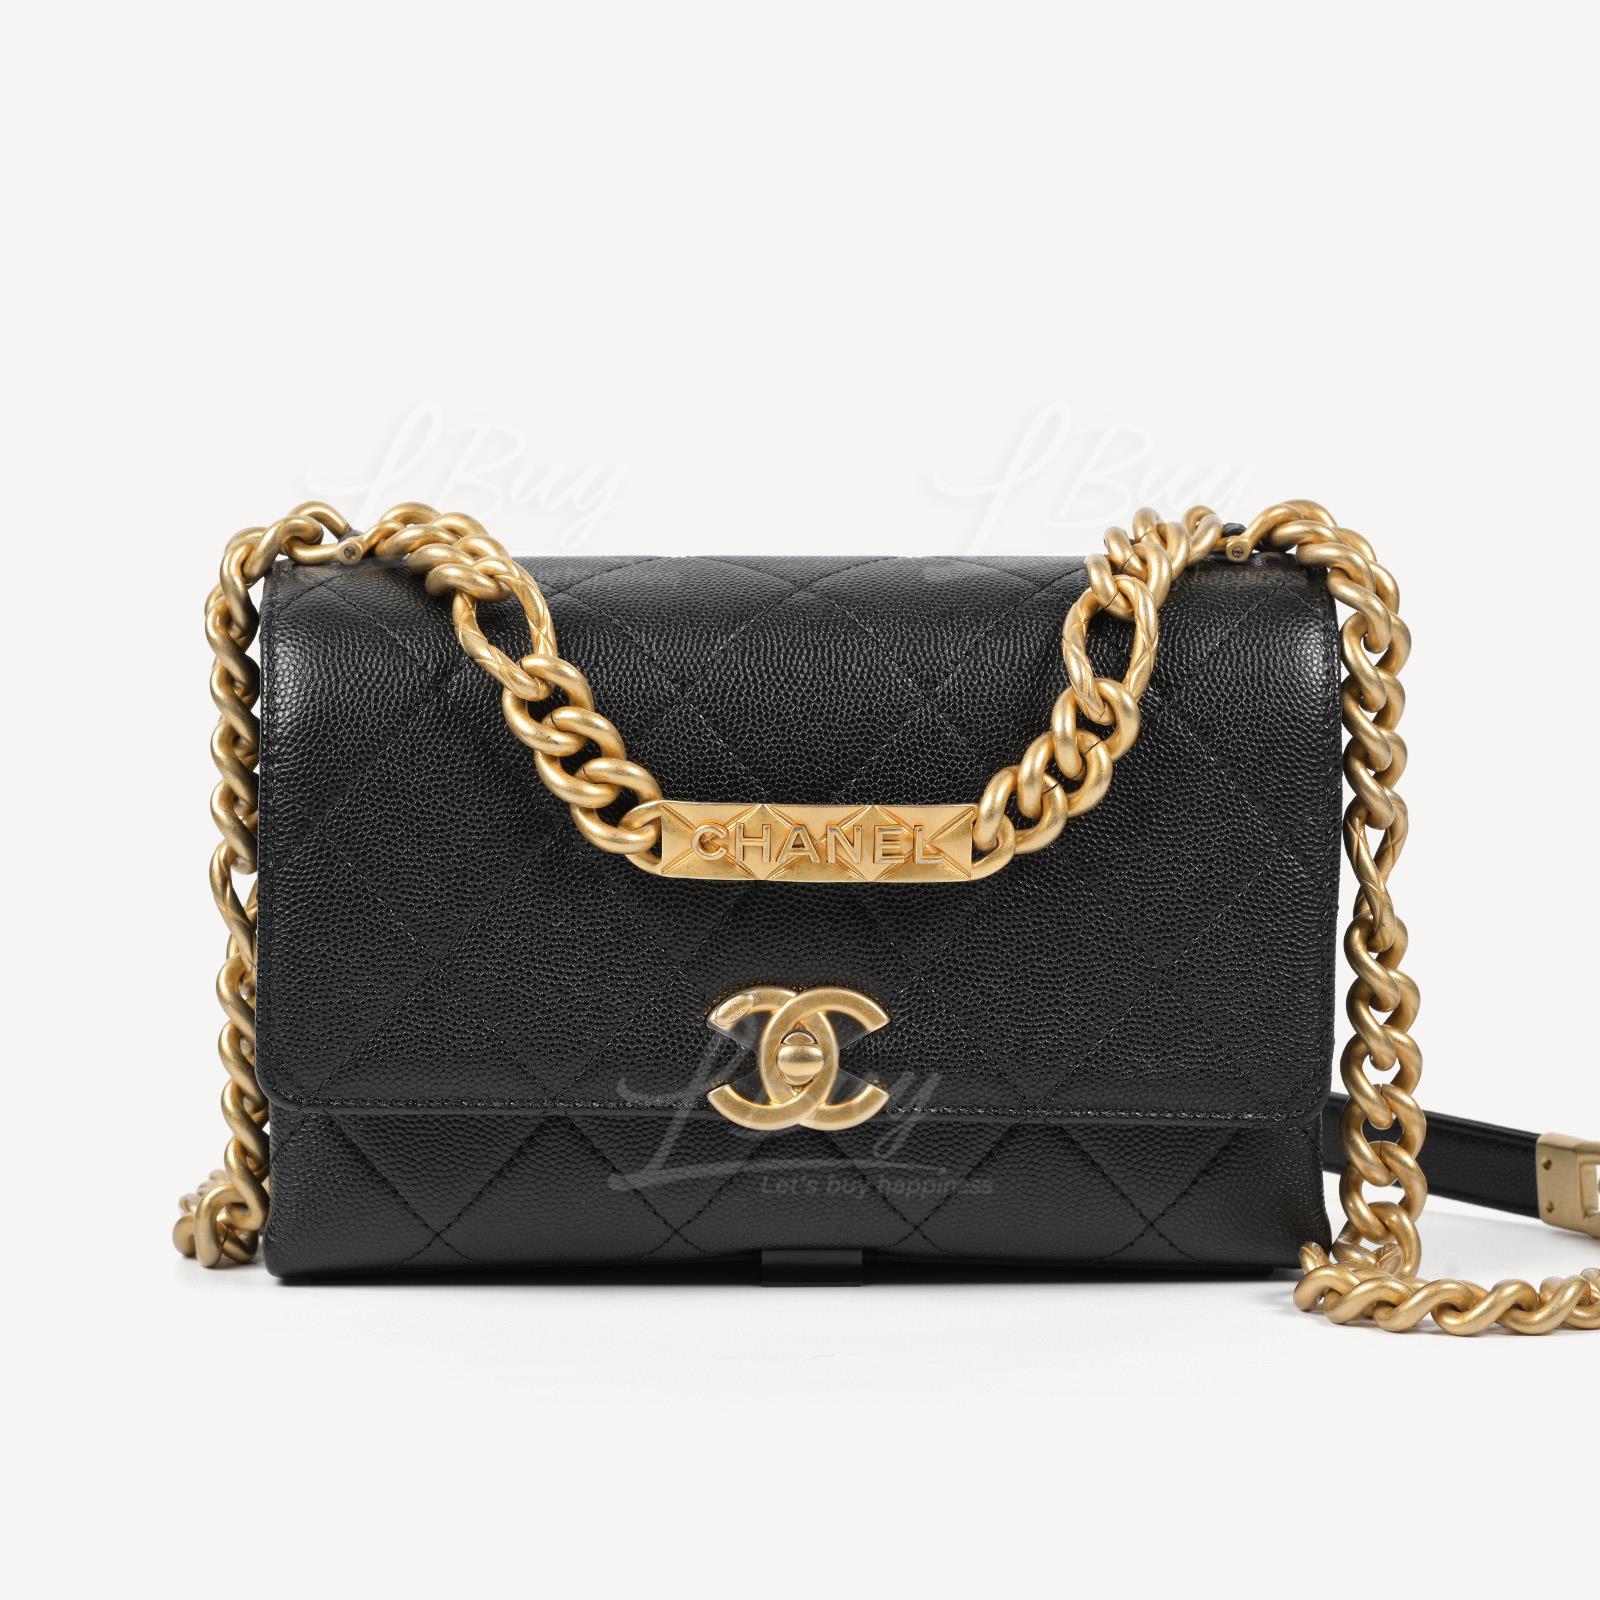 Chanel 金属牌链带垂盖手袋 黑色 AS2711